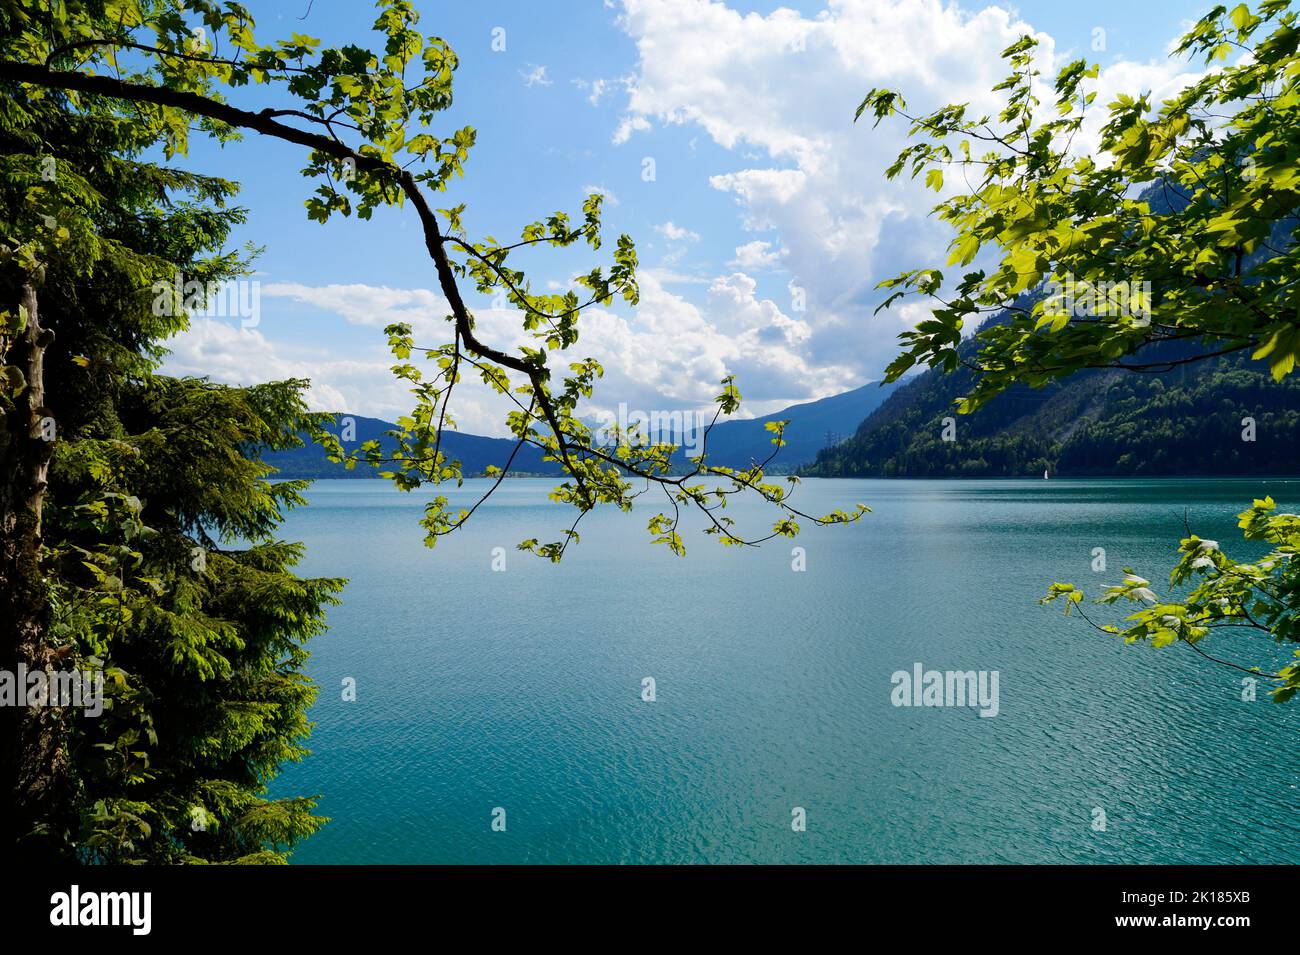 Acque verdi smeraldo del Walchensee o del Lago di Walchen, uno dei laghi alpini più profondi e grandi della Germania (Baviera) Foto Stock